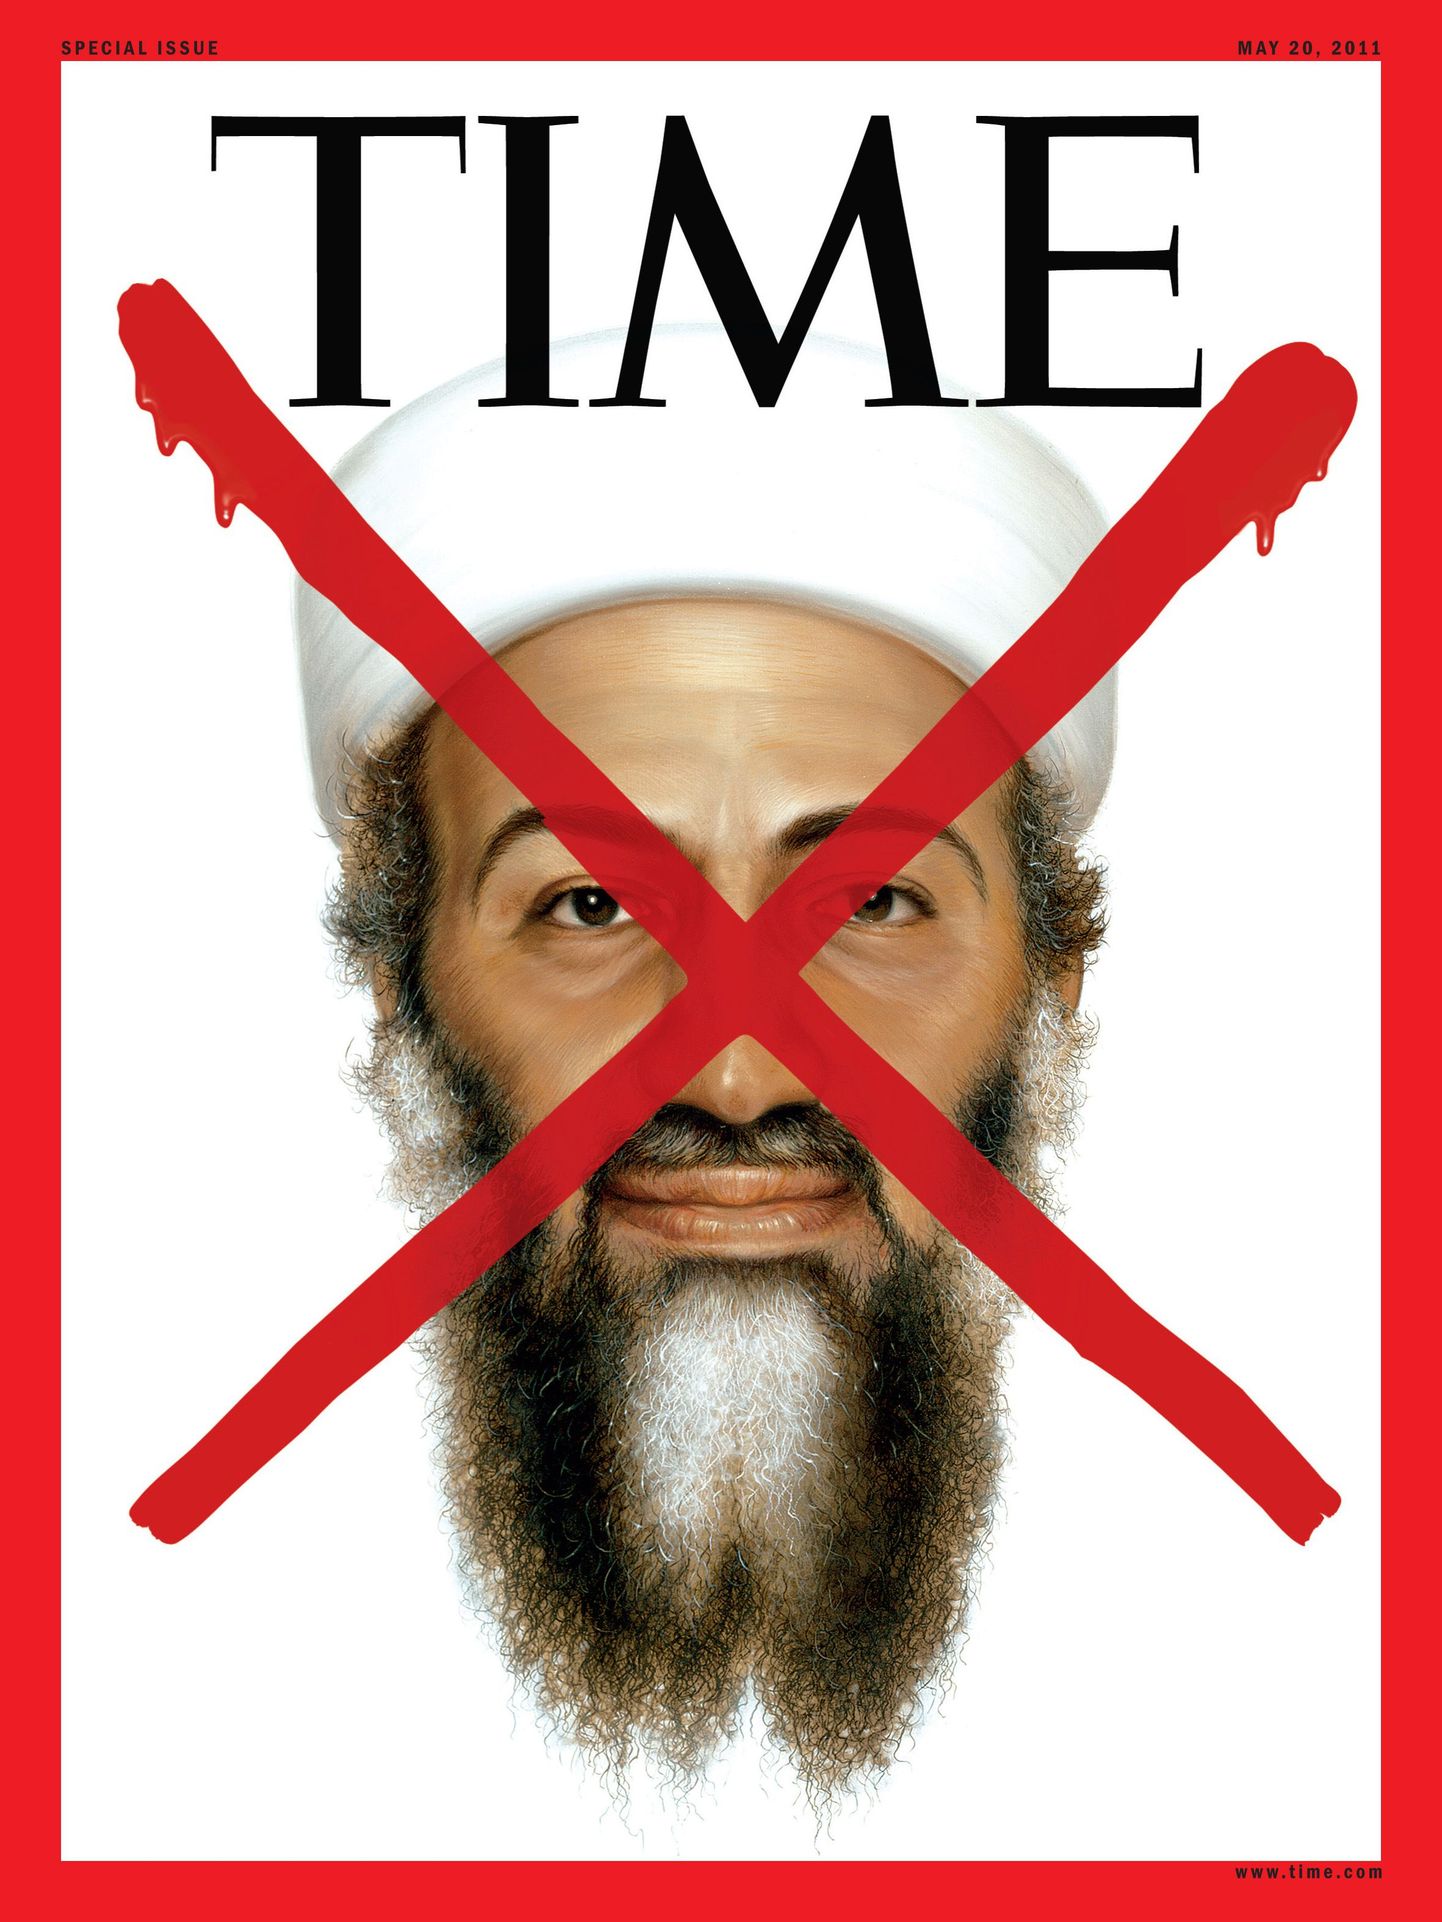 Ajakirja Time esikaas bin Ladeni pildiga.